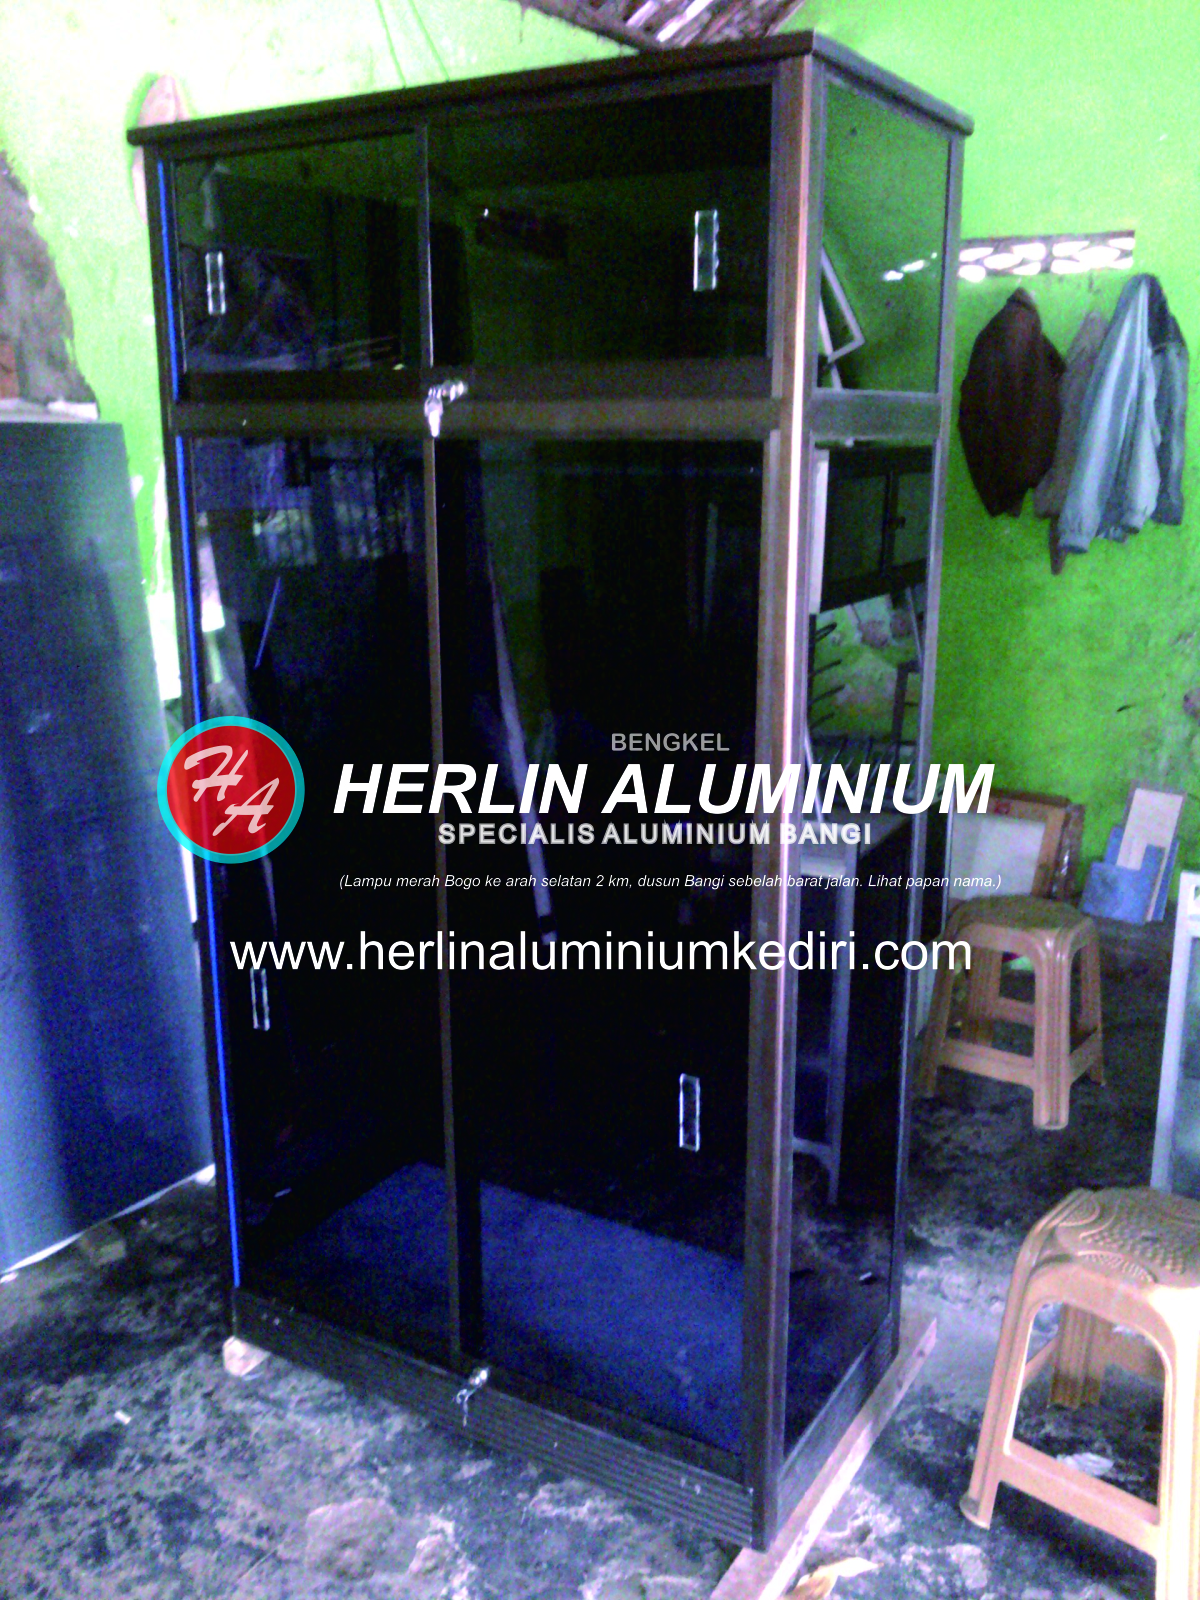 Daftar harga Lemari  Pakaian  Aluminium  di Herlin Aluminium  